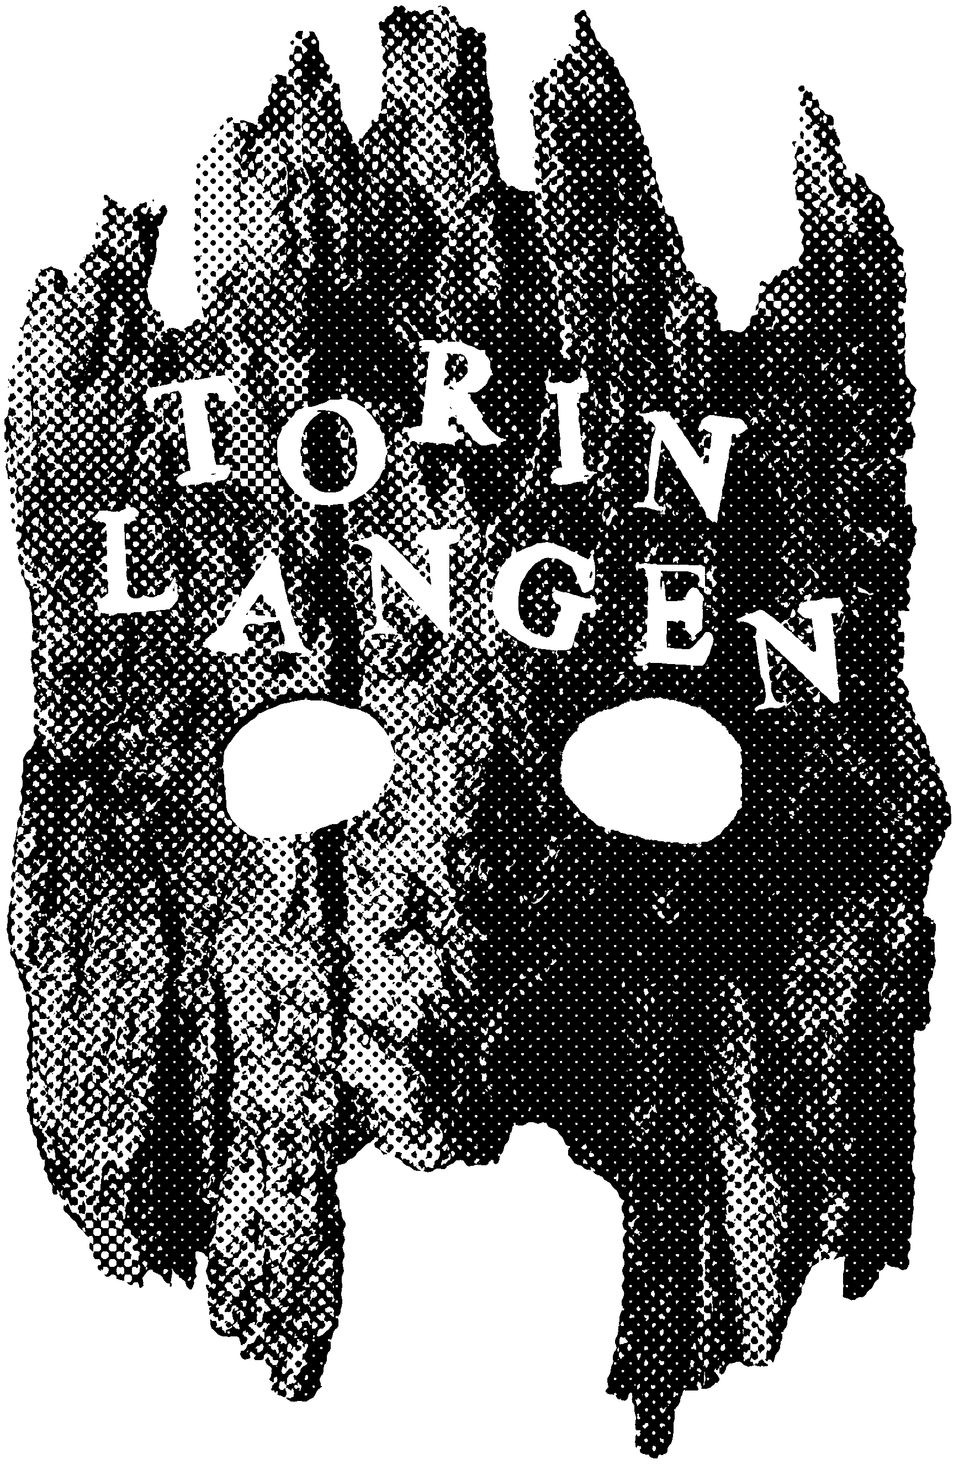 Torin Langen's Portfolio